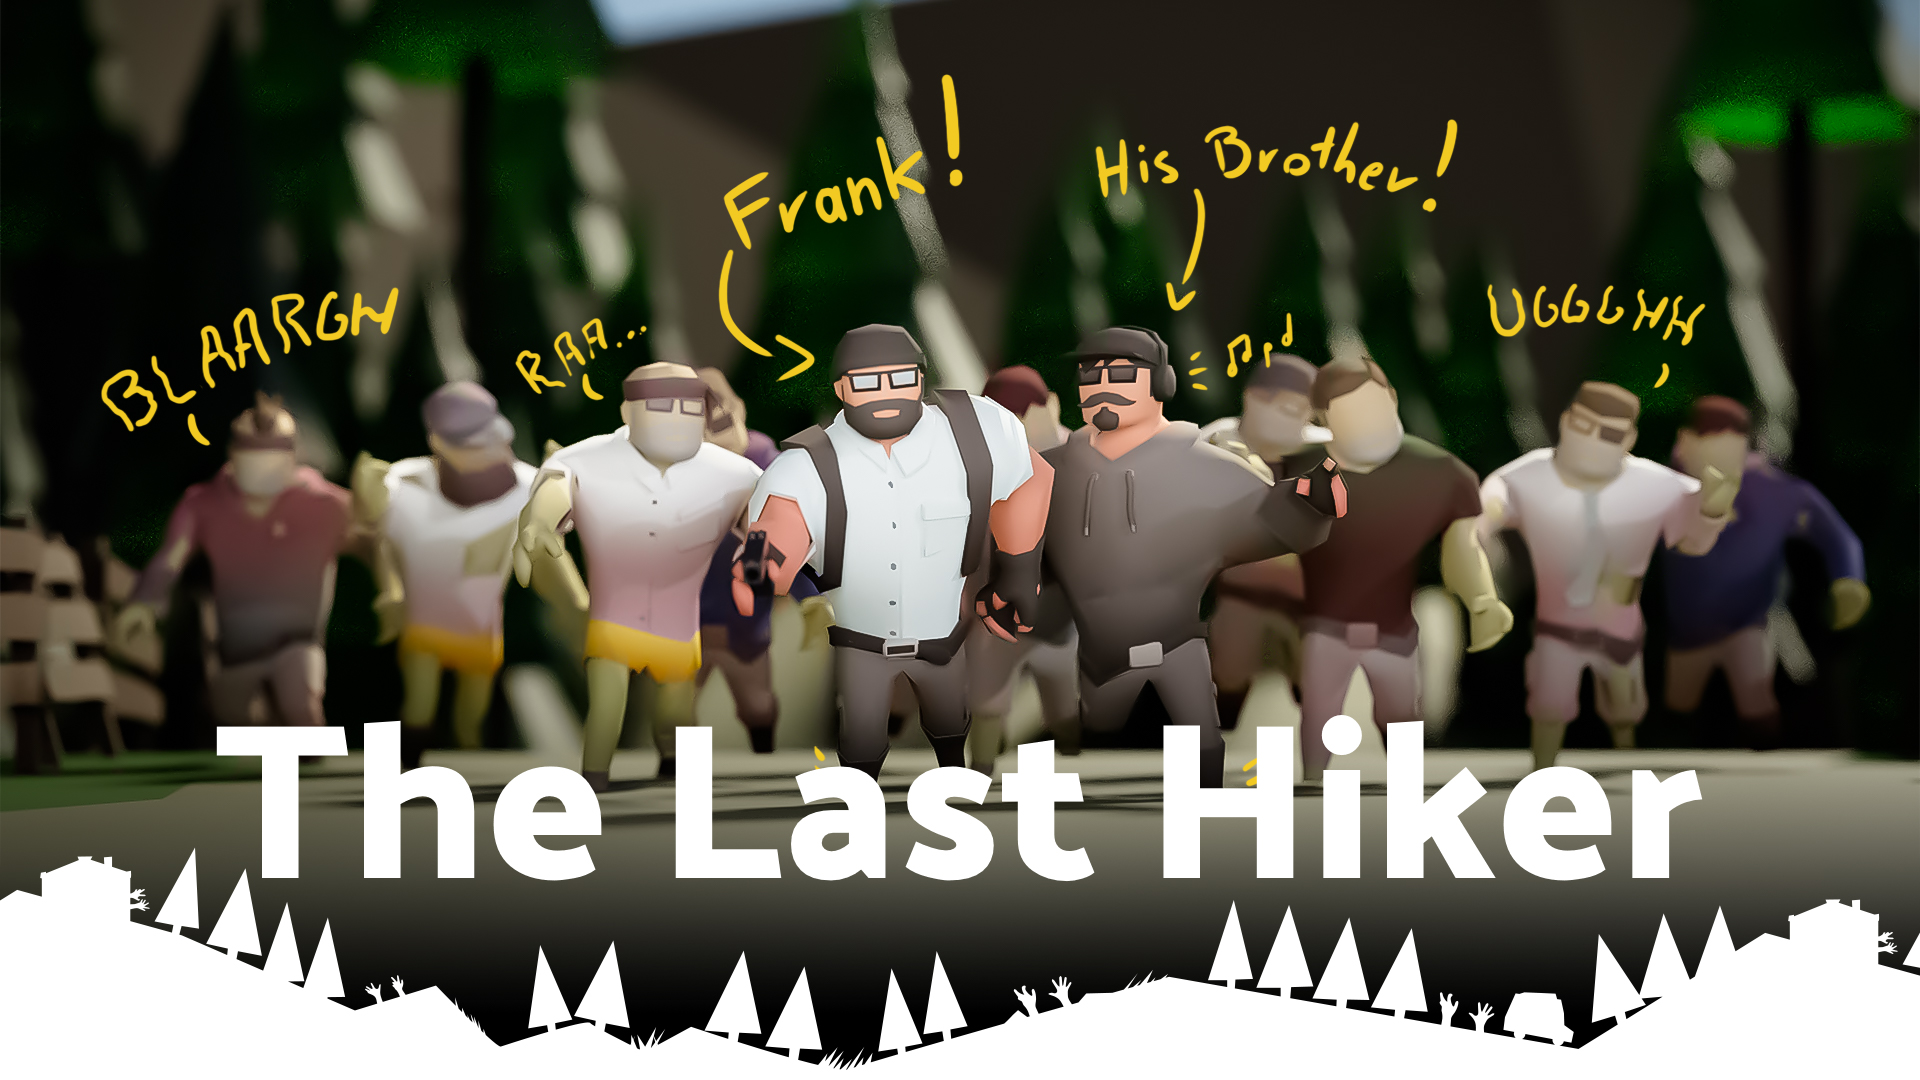 The Last Hiker